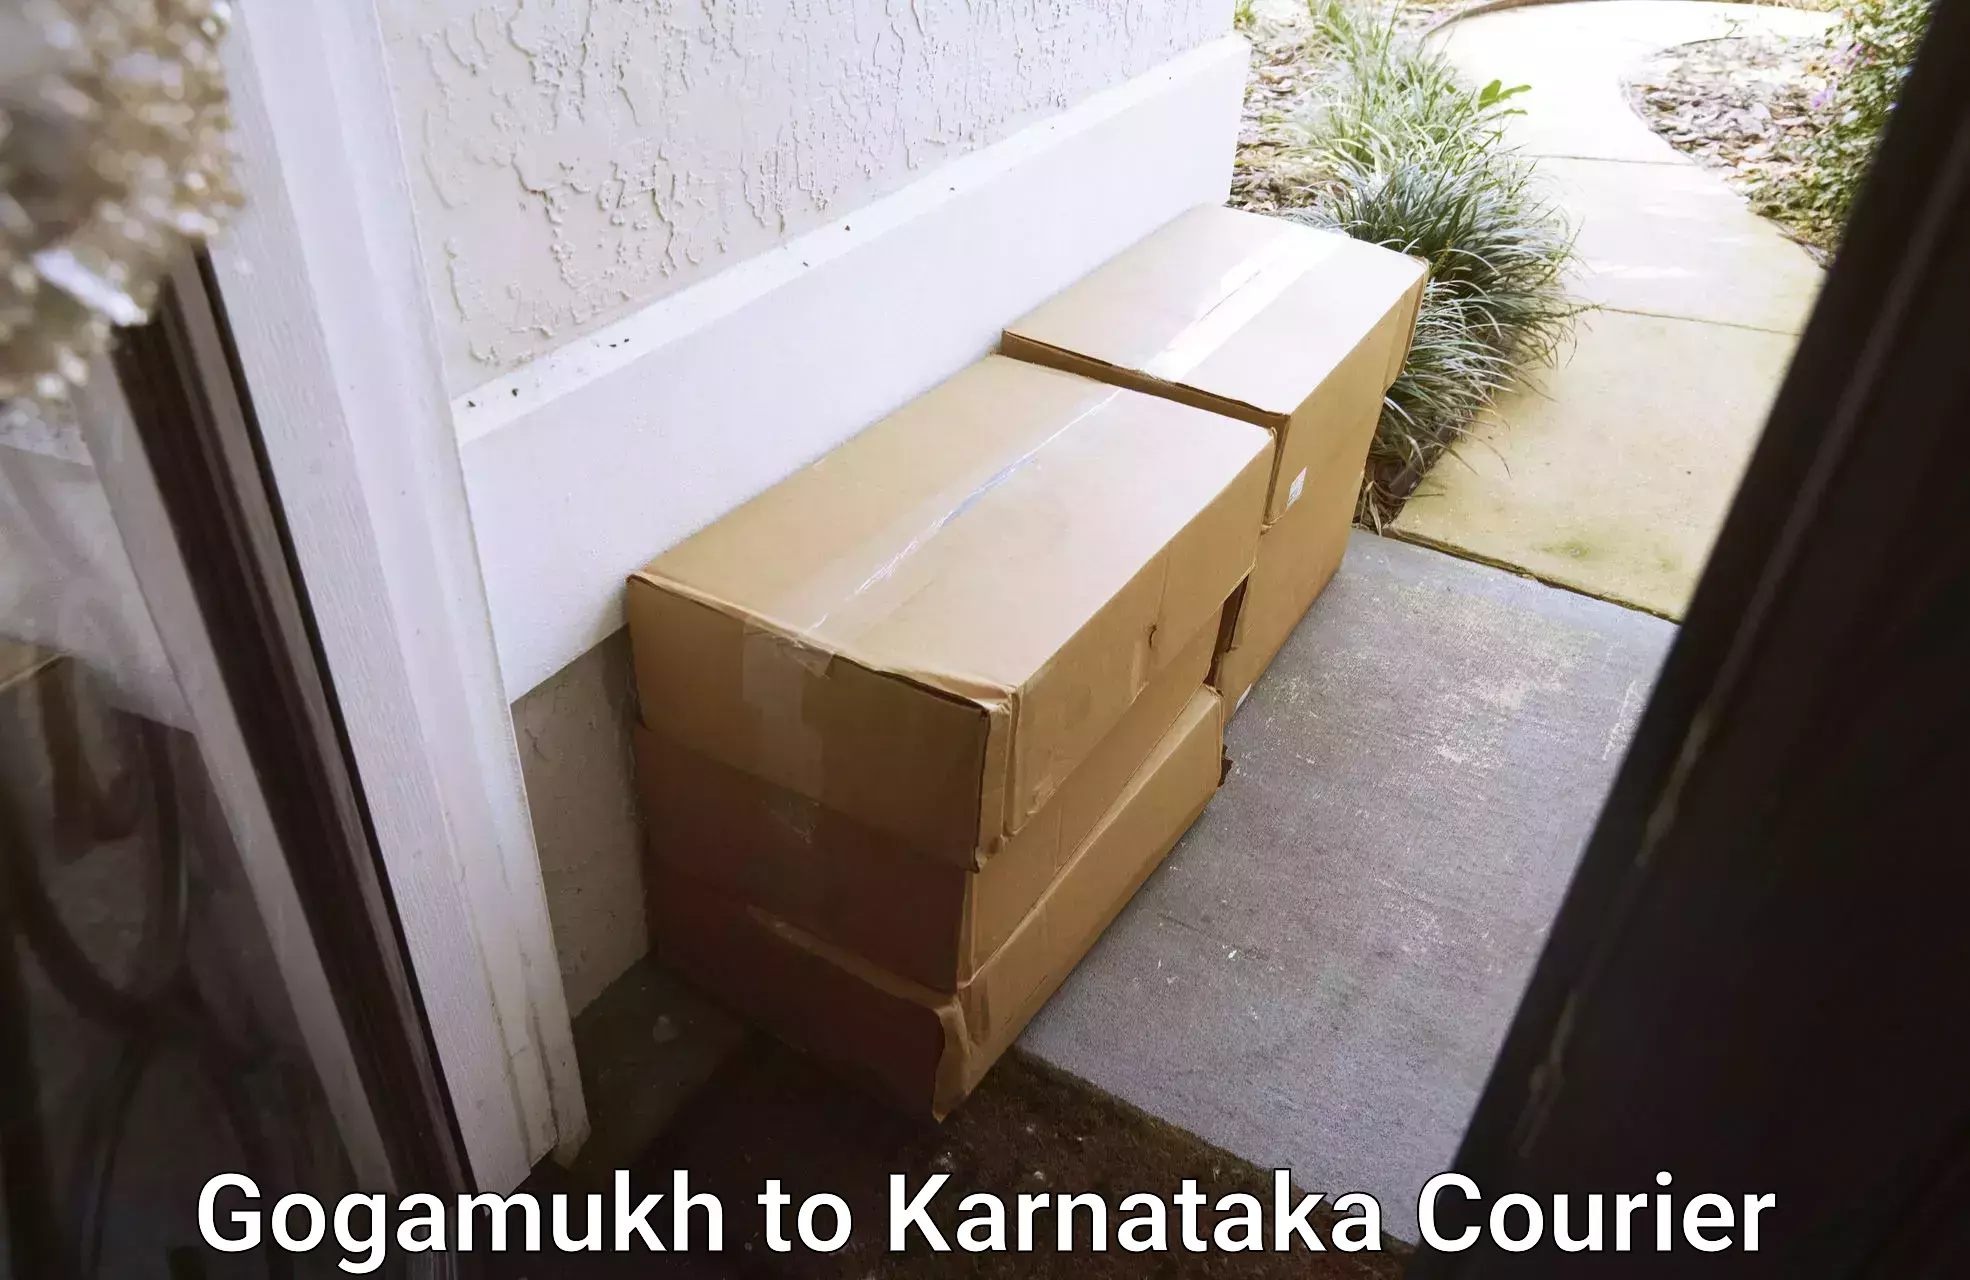 Custom courier packaging in Gogamukh to Karnataka